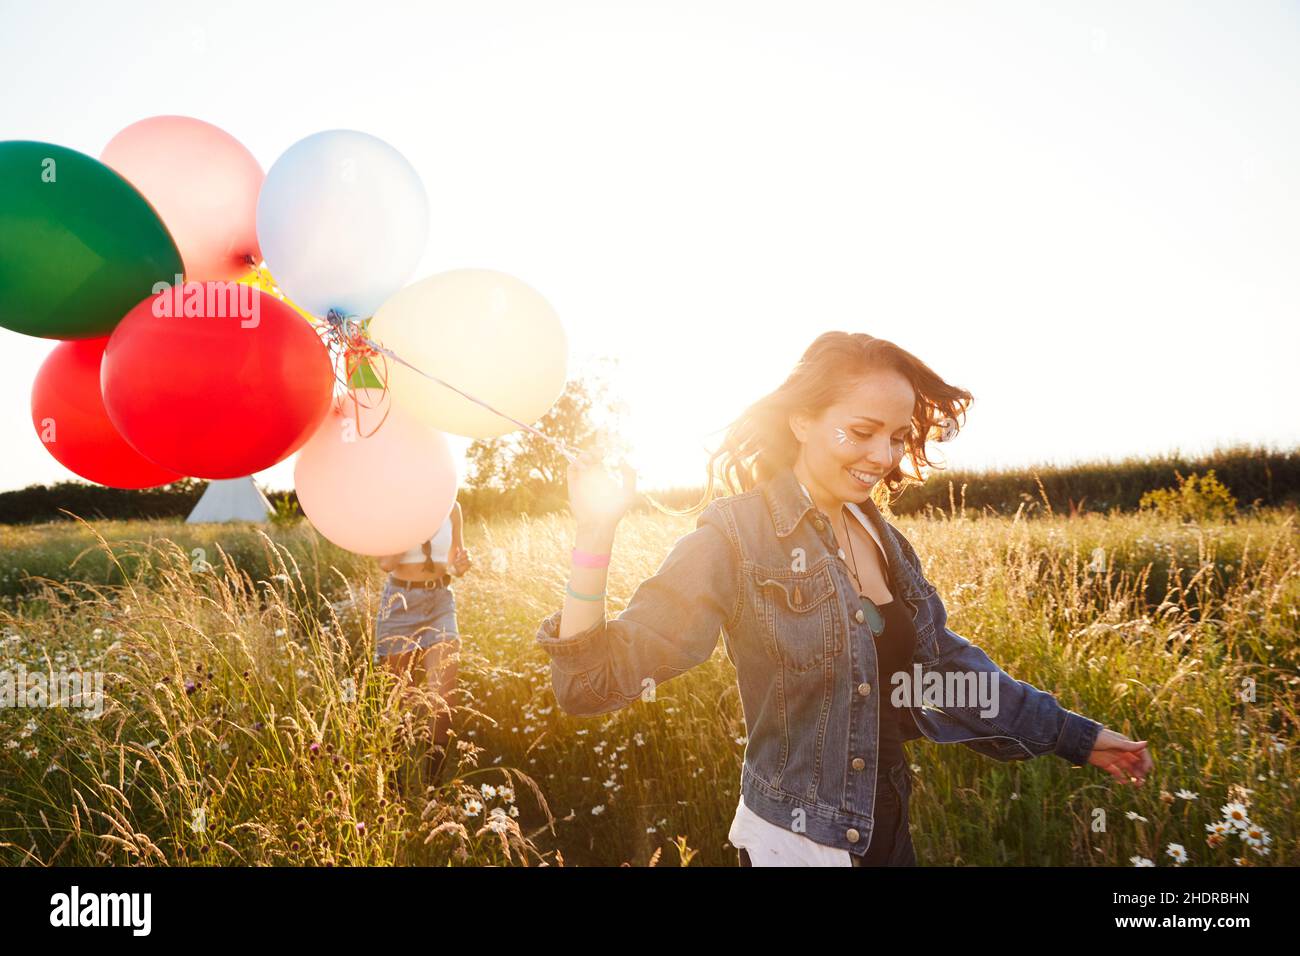 summer, friends, balloons, summers, friend, balloon Stock Photo